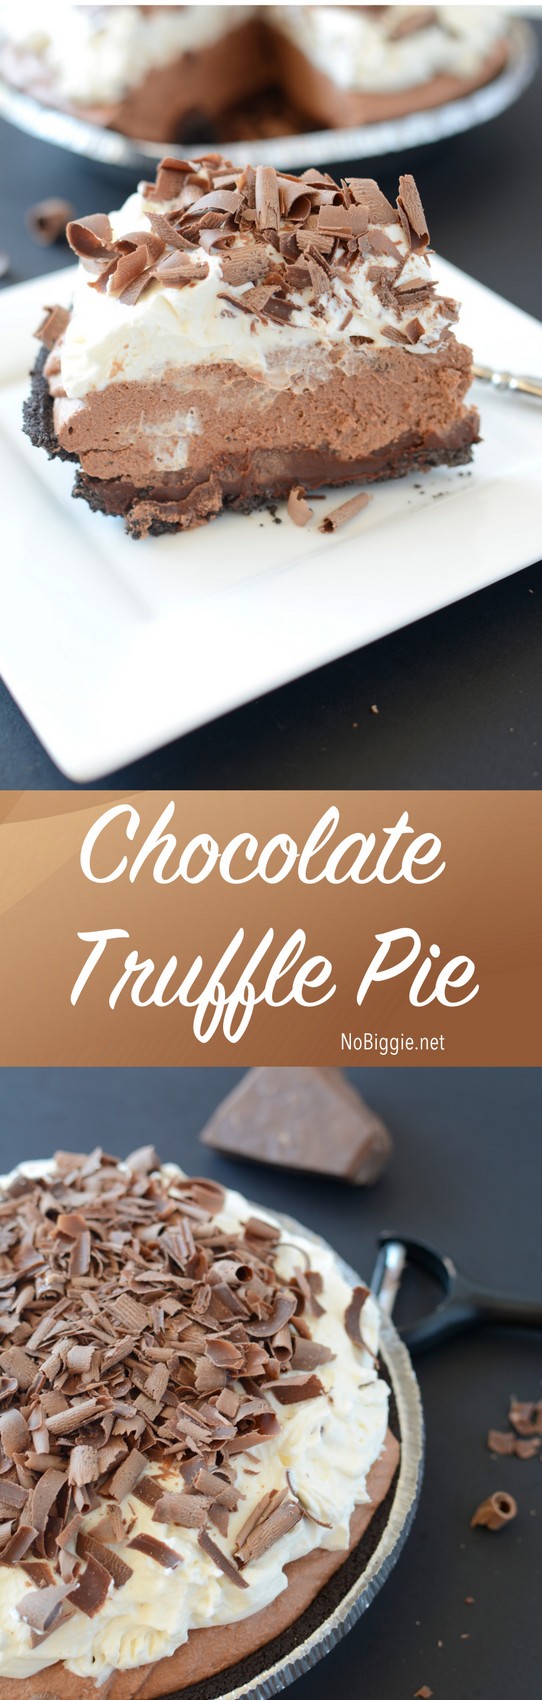 Chocolate Truffle Pie | NoBiggie.net